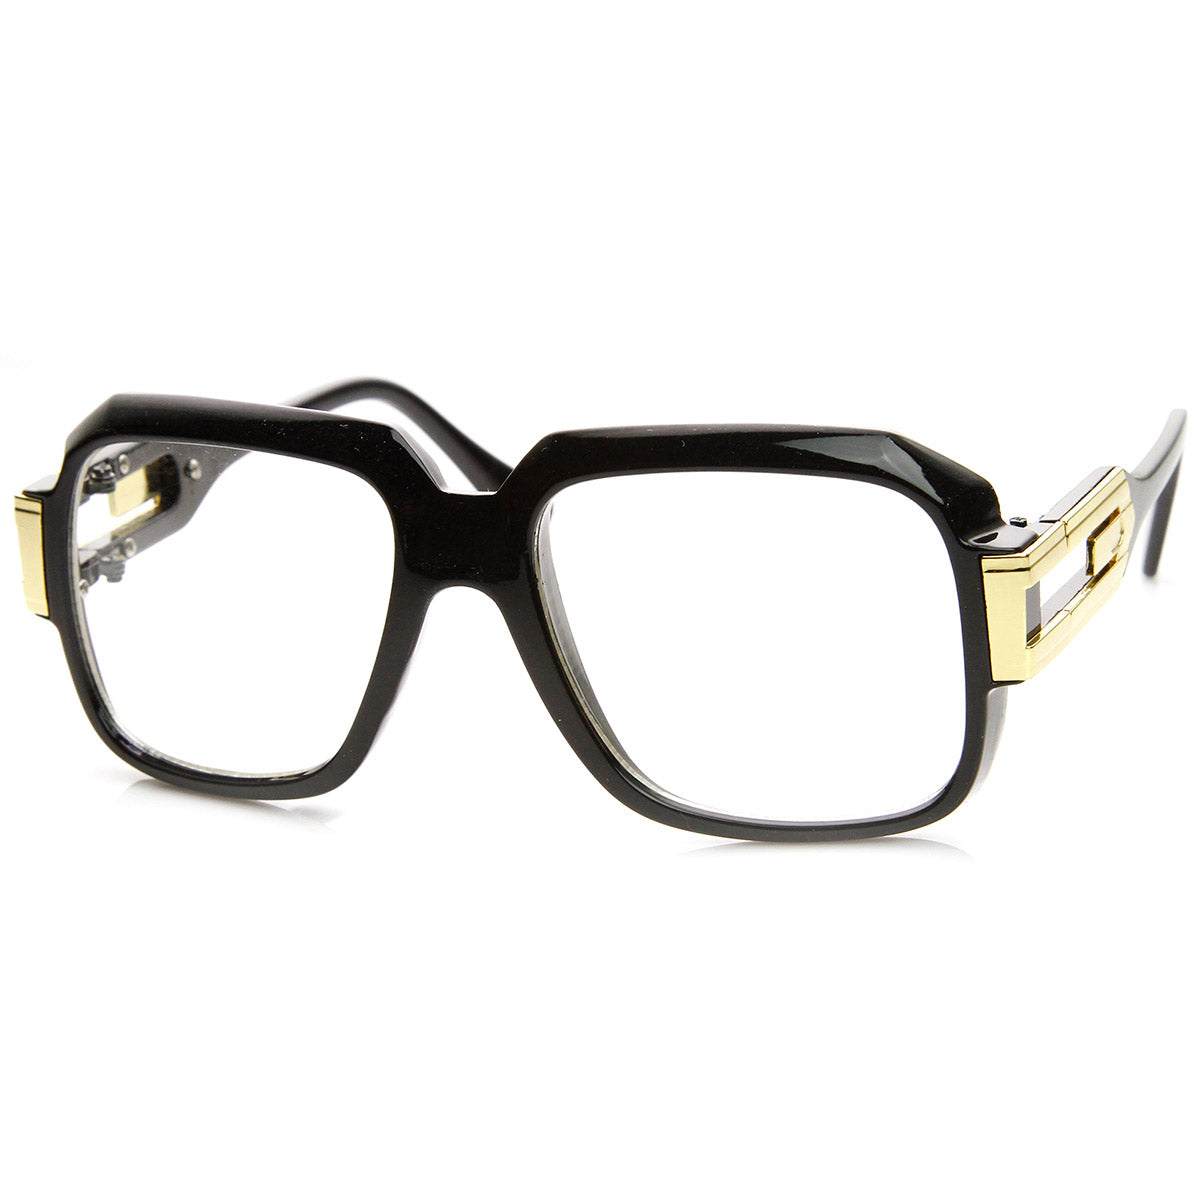 White Frame Black Lens Hip Hop Sunglasses Men Classy Style Designer Elegant  NEW